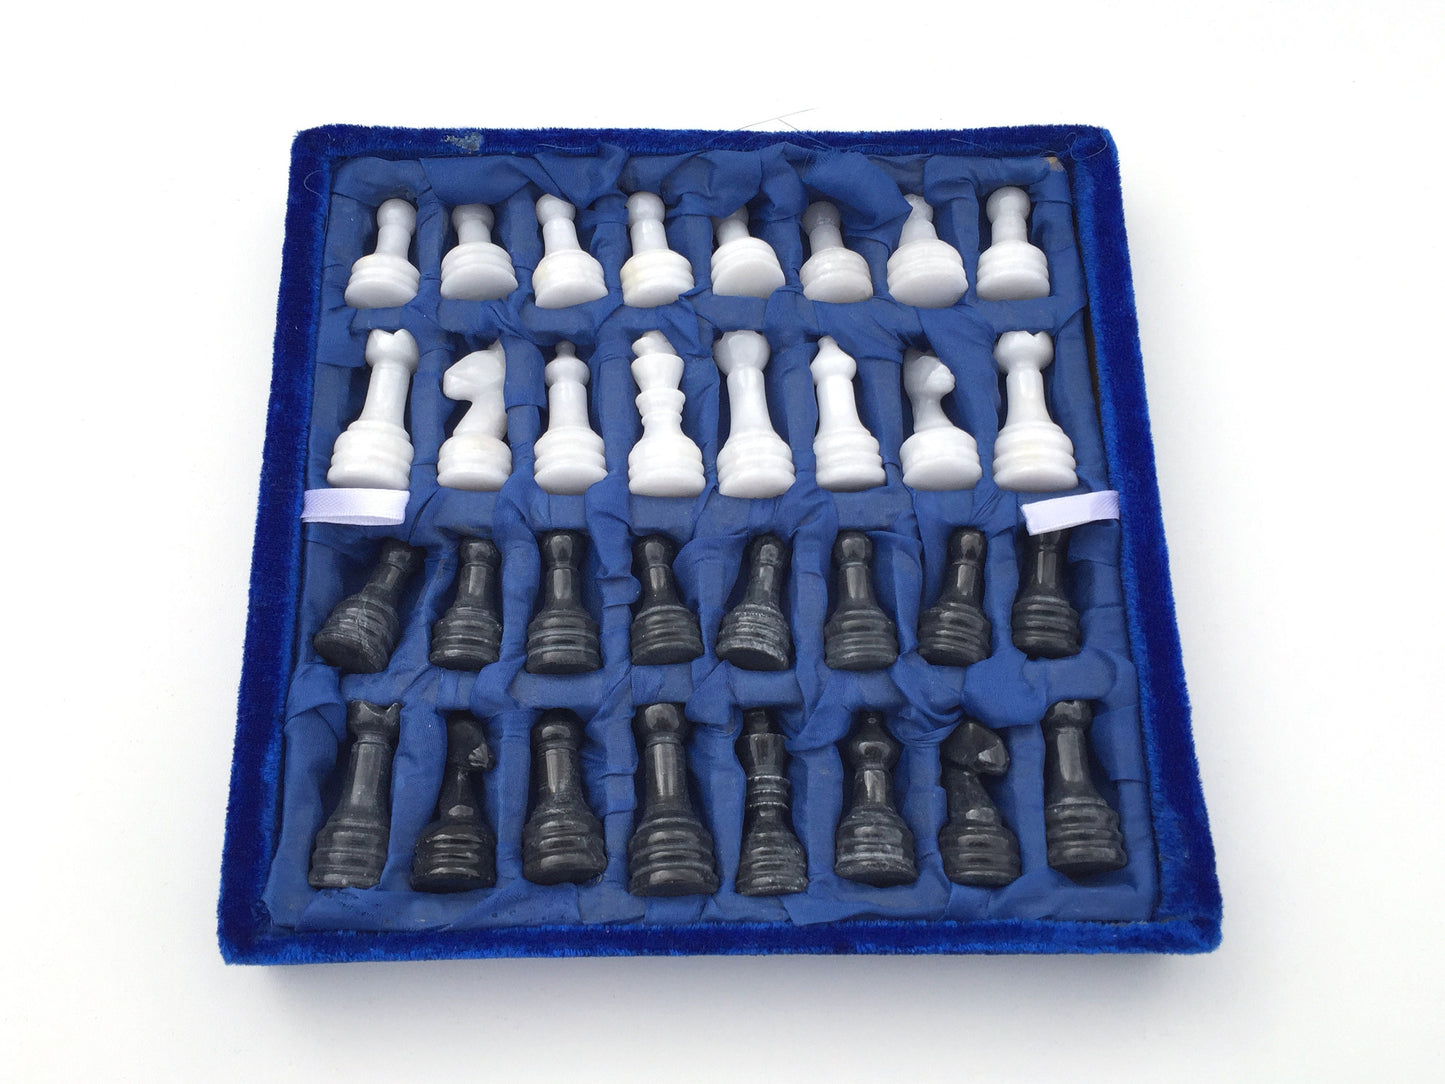 Schachspiel rustikal Olivenholz Schachbrett Gr. M inkl. 32er  Schachfiguren aus Marmor